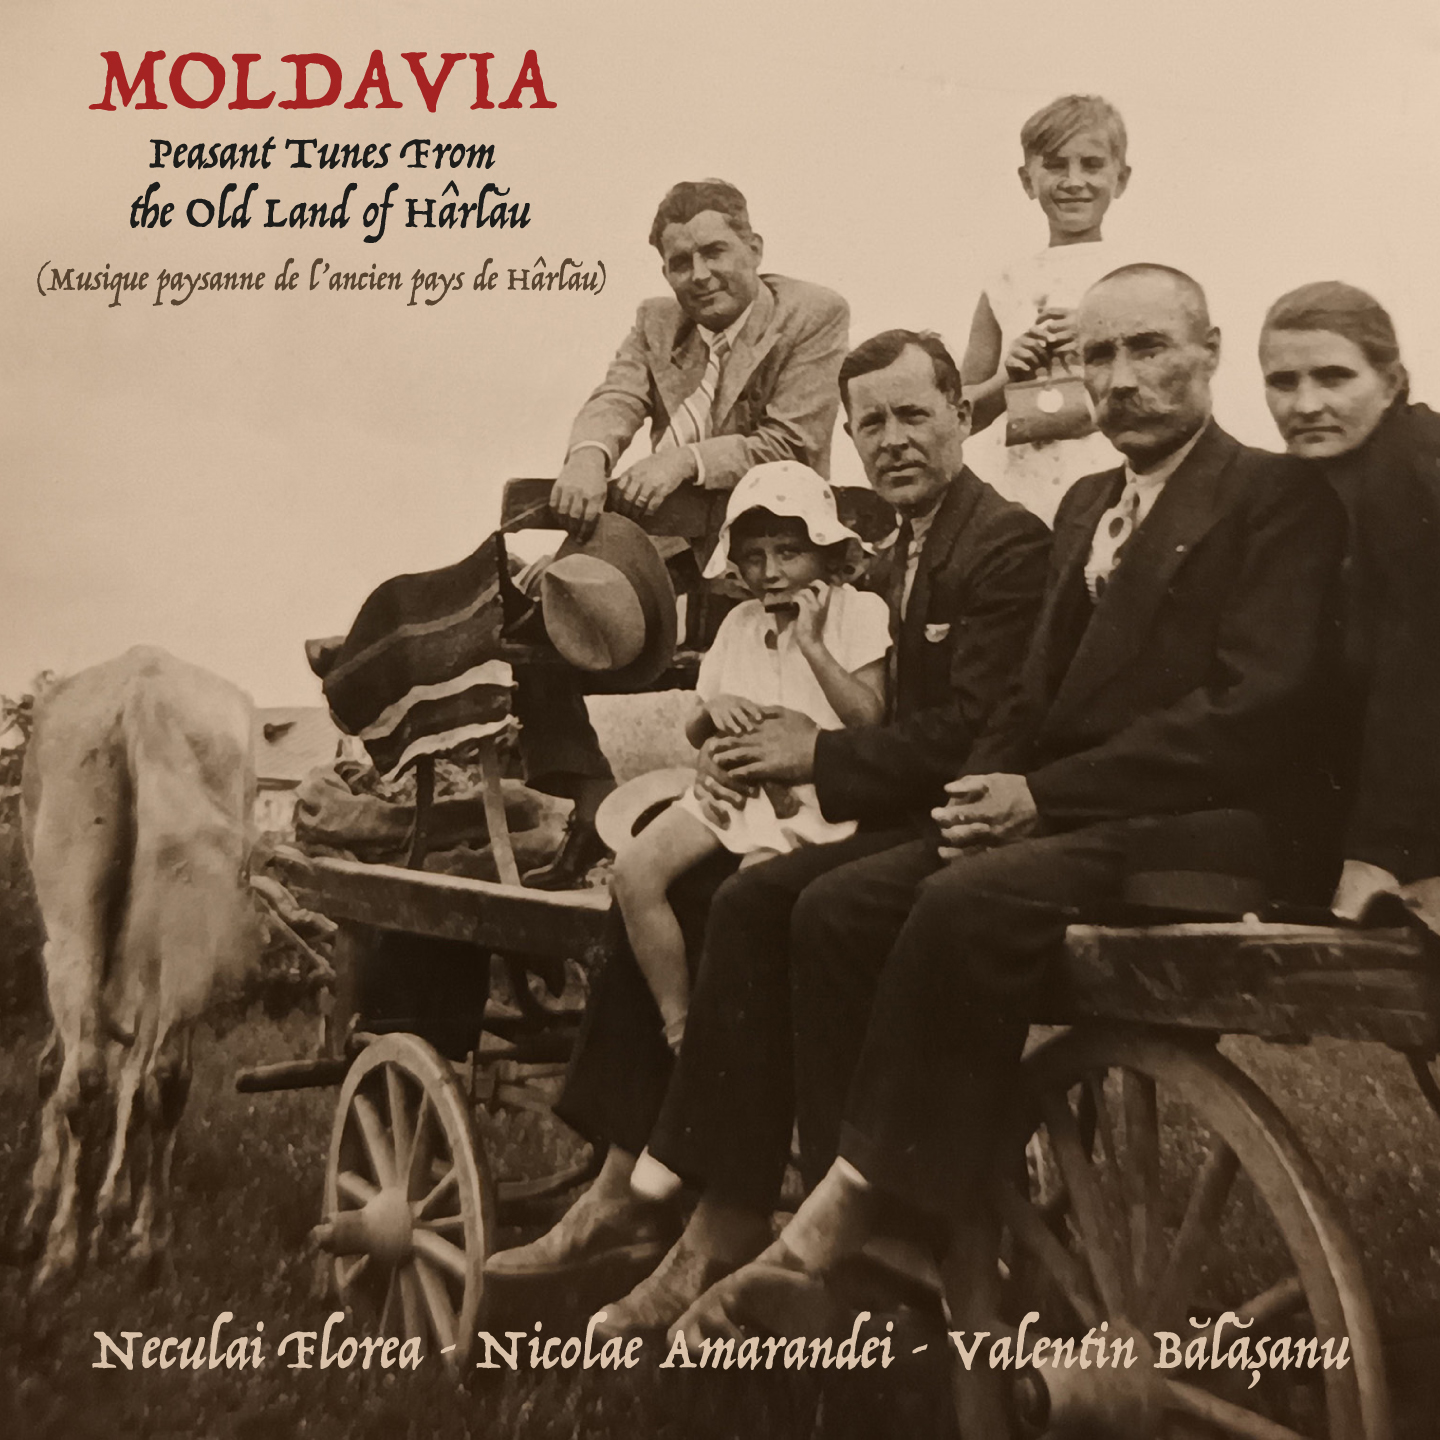 moldavia-musique-paysanne-de-l-ancien-pays-de-harlsu